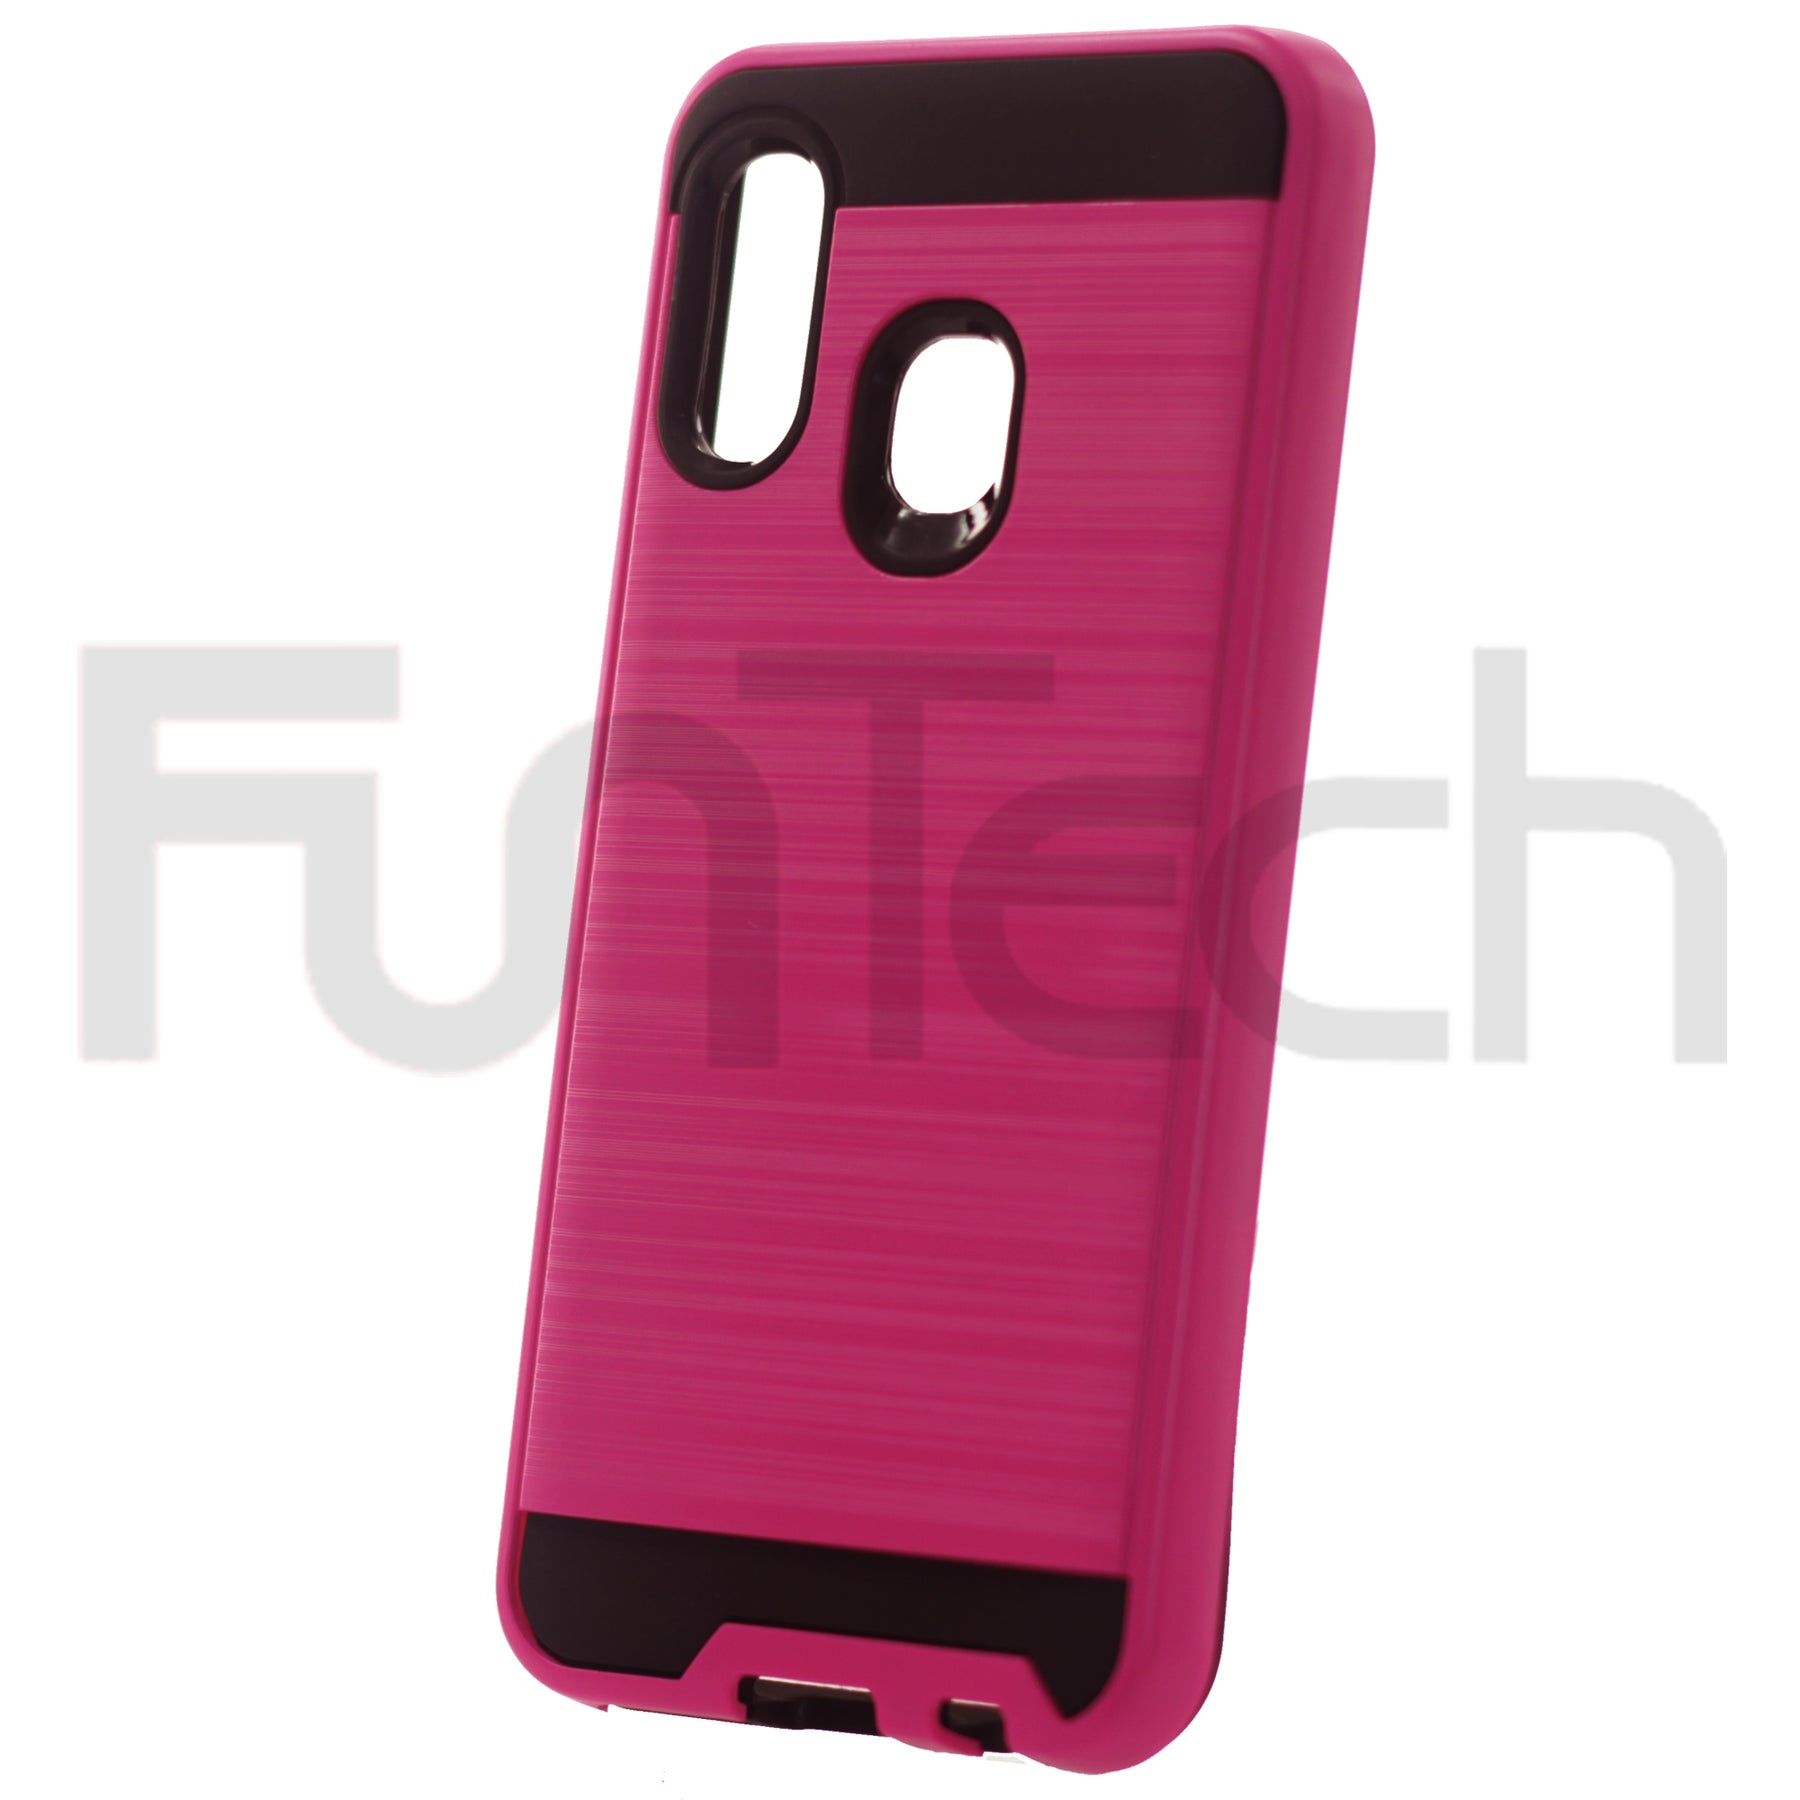 Samsung A10E, A20E, Slim Armor Case, Color Pink.